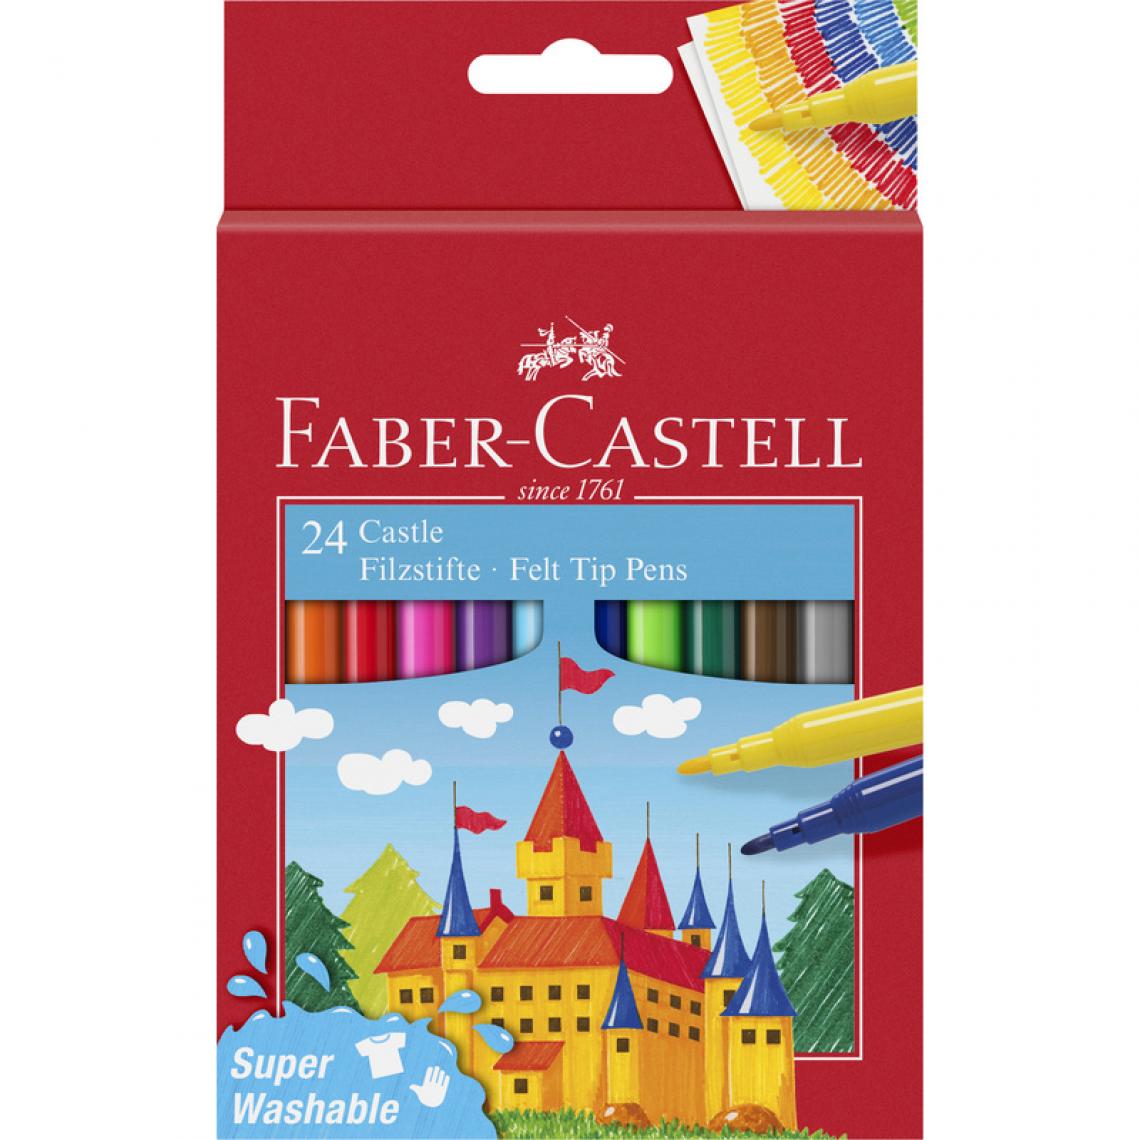 Faber-Castell - FABER-CASTELL Stylo feutre CASTLE, étui carton de 24 pièces () - Outils et accessoires du peintre